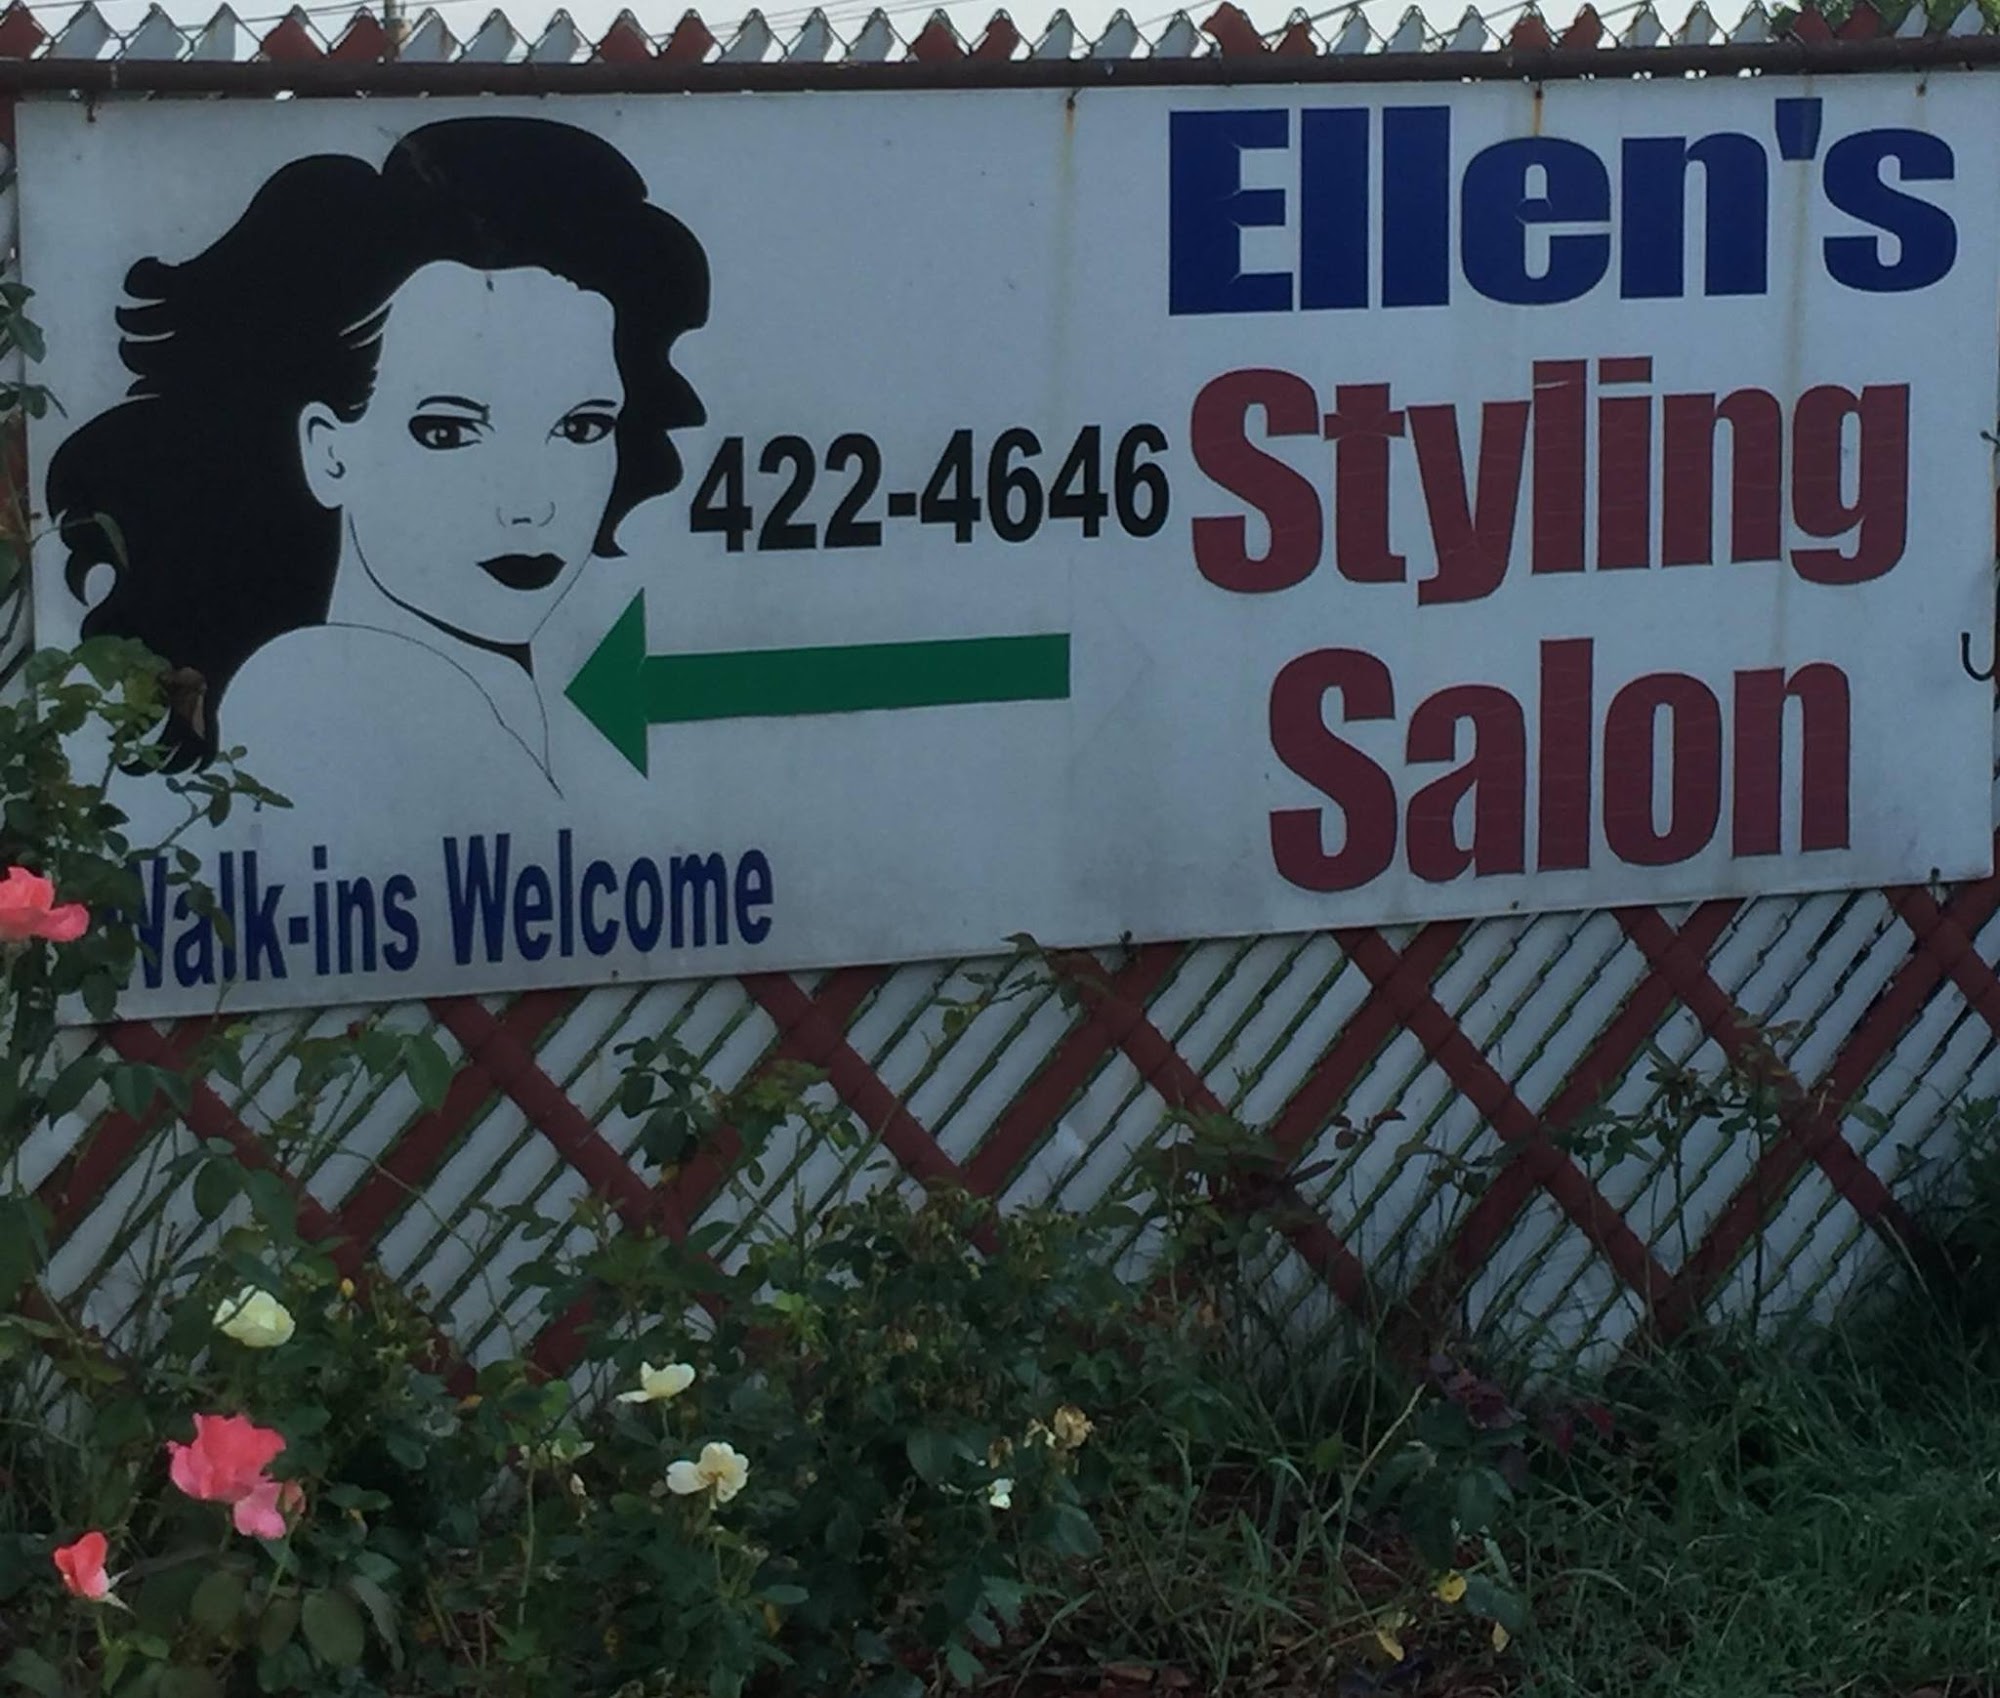 Ellen's Styling Salon